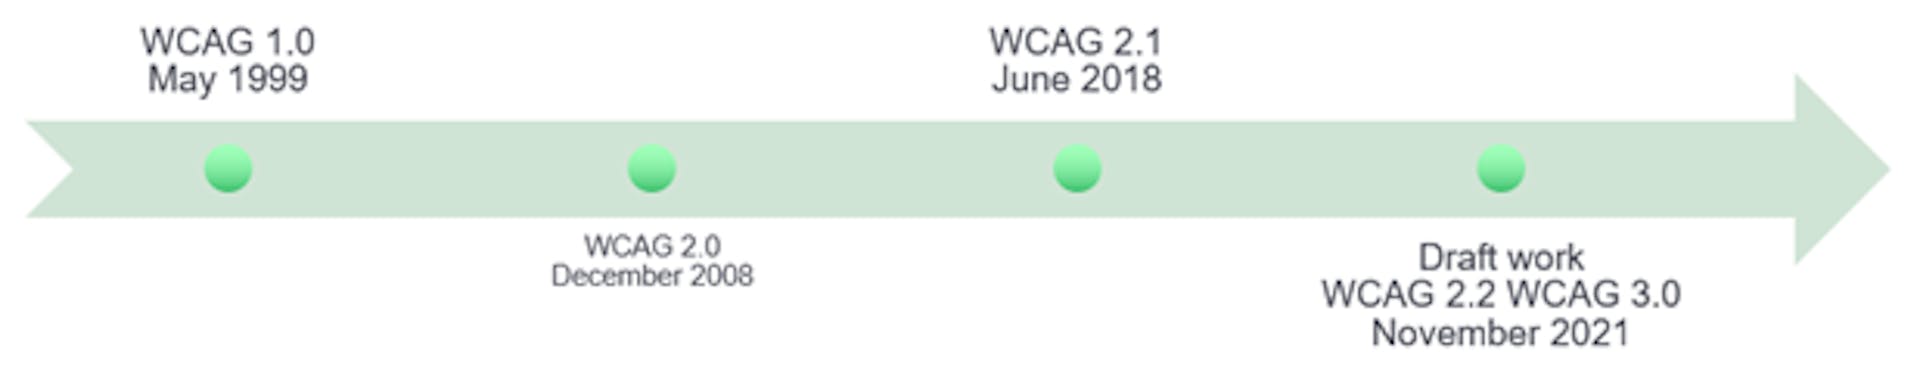 该图描绘了 WCAG 无障碍指南的演变